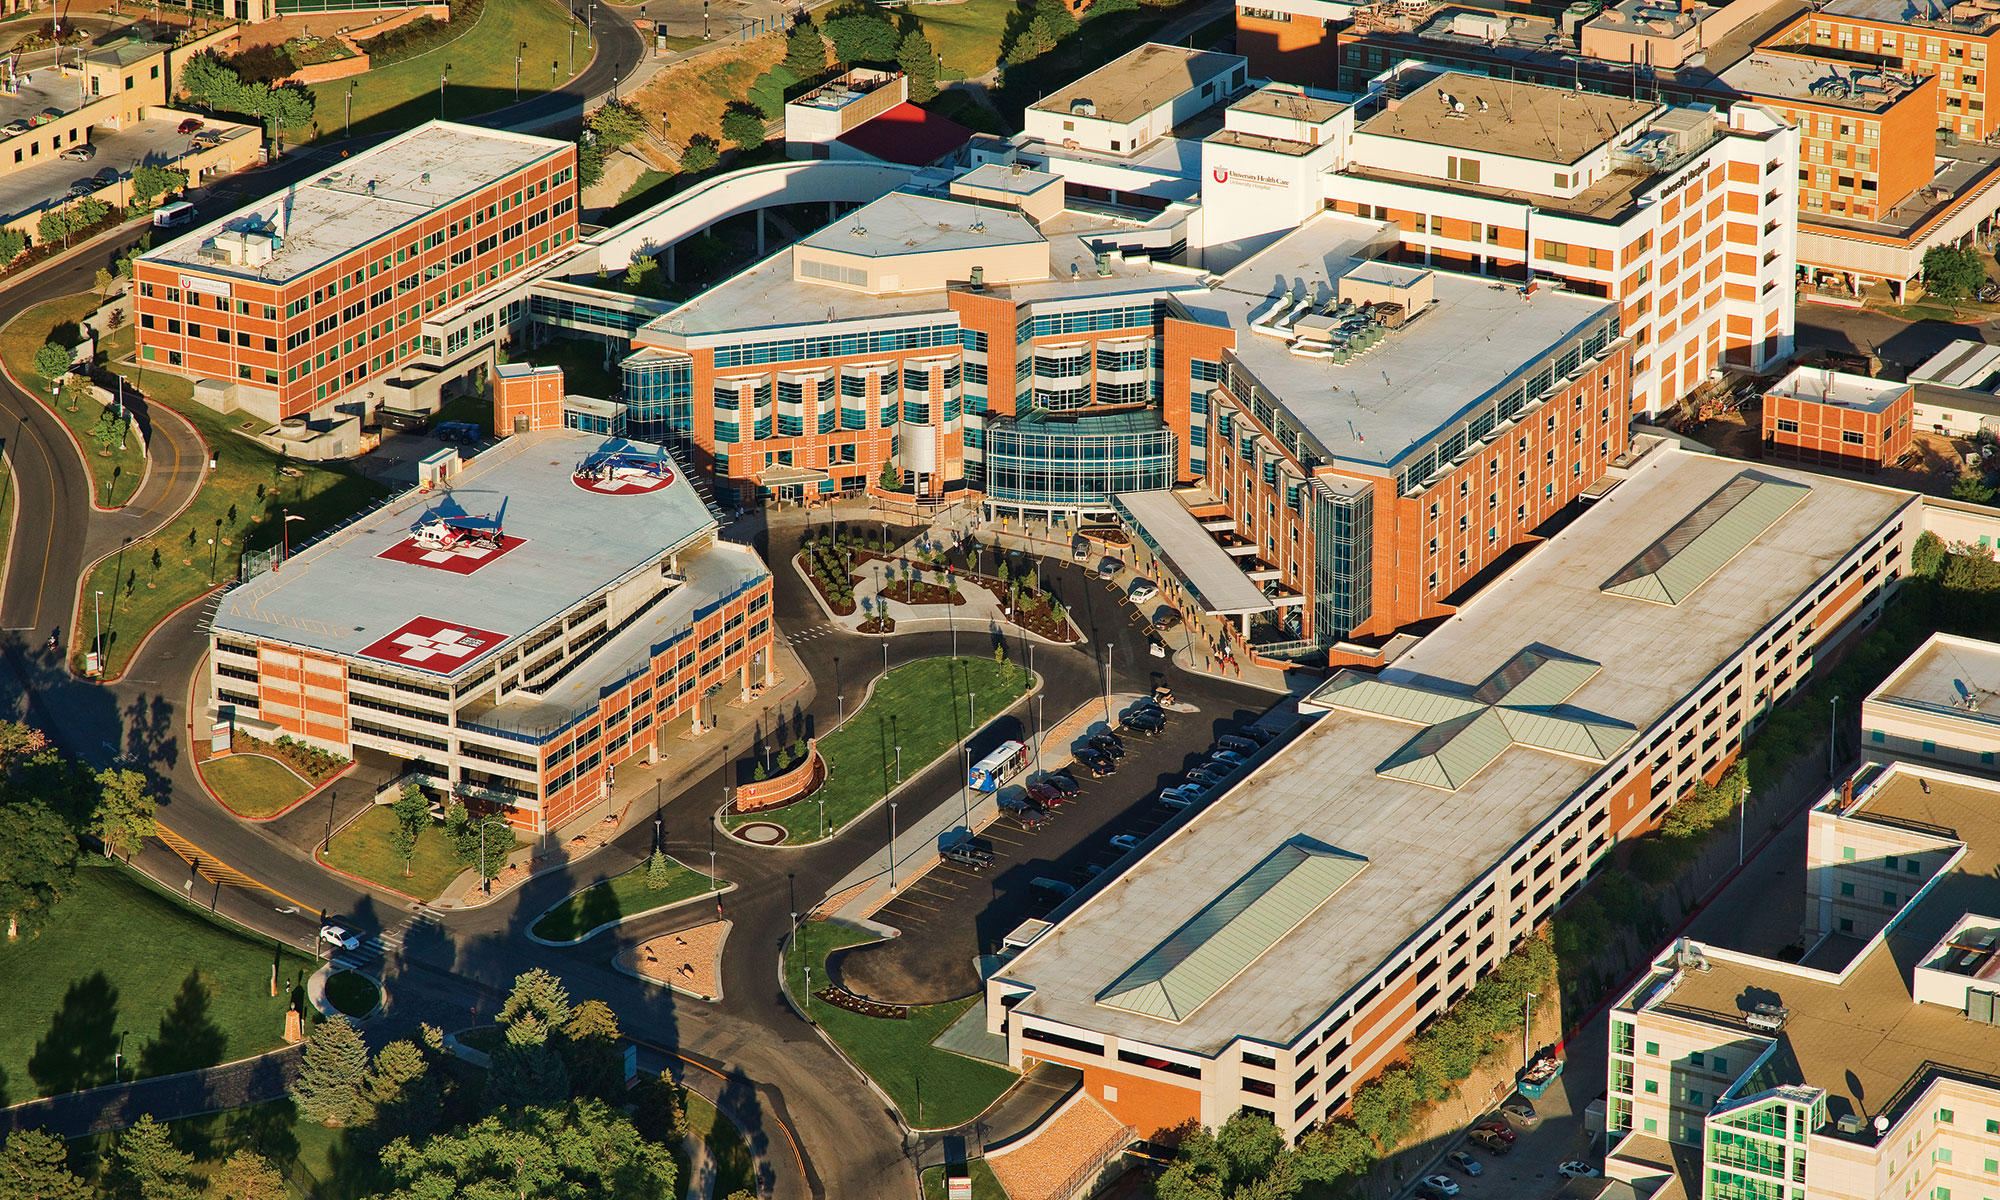 University of Utah Medical Center